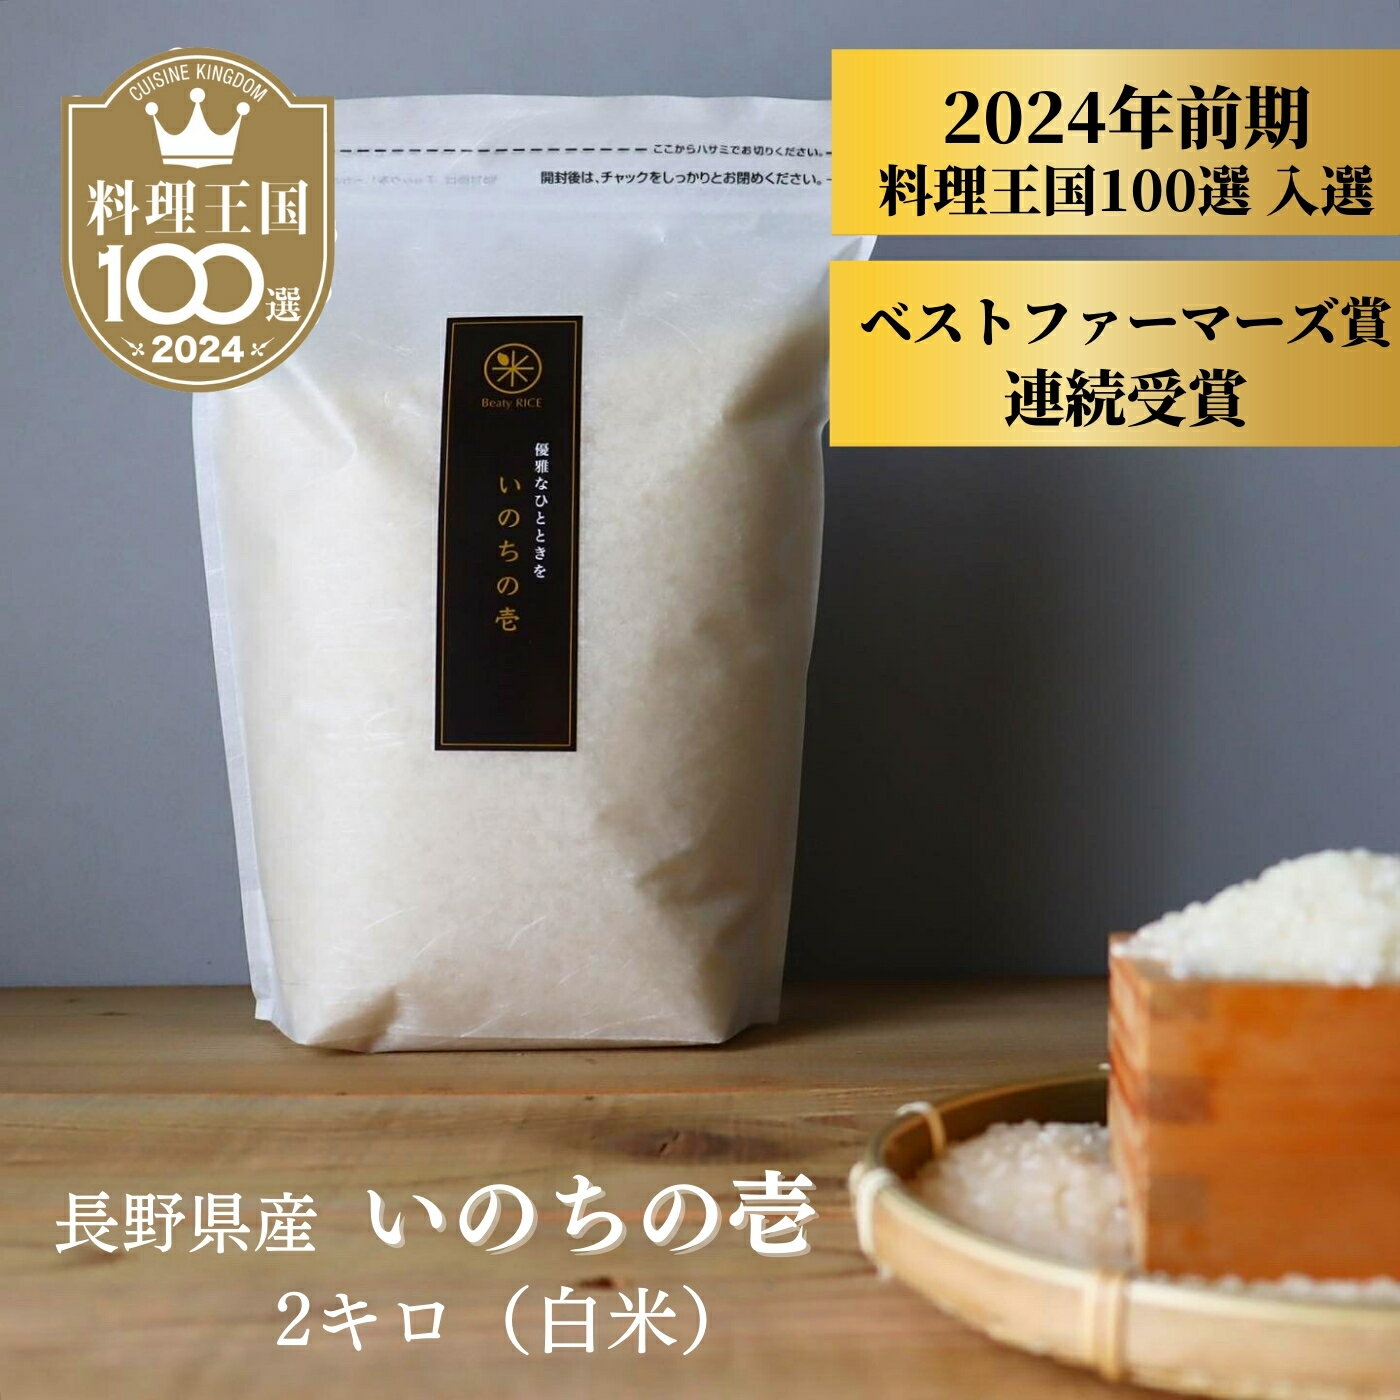 【 料理王国100選 2024、ベストファー